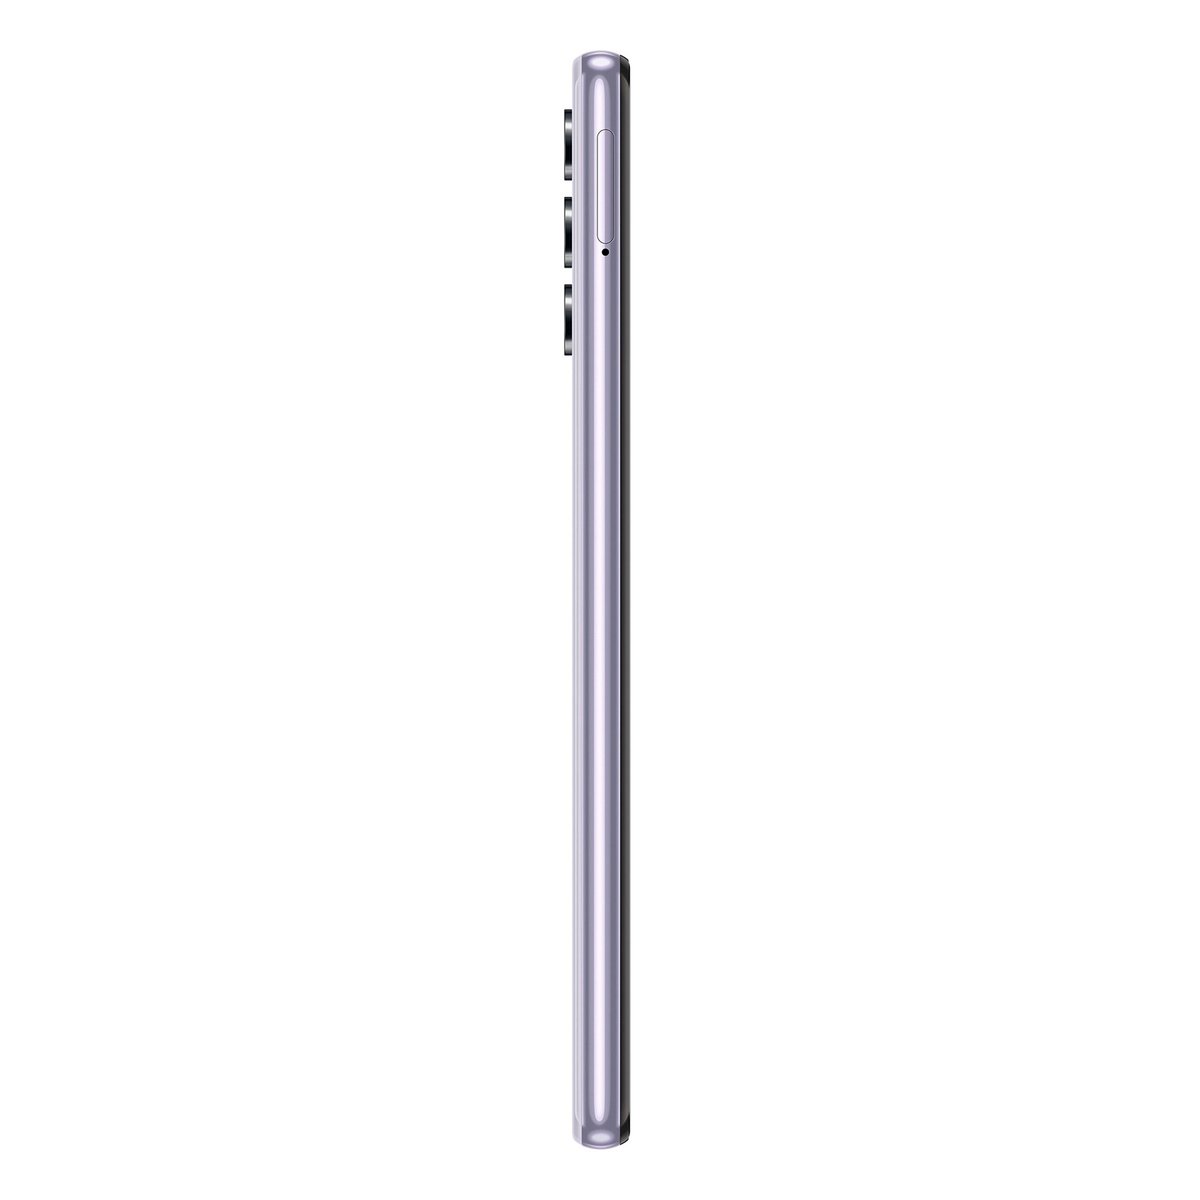 Samsung Galaxy A32 SM-A325 128GB Violet